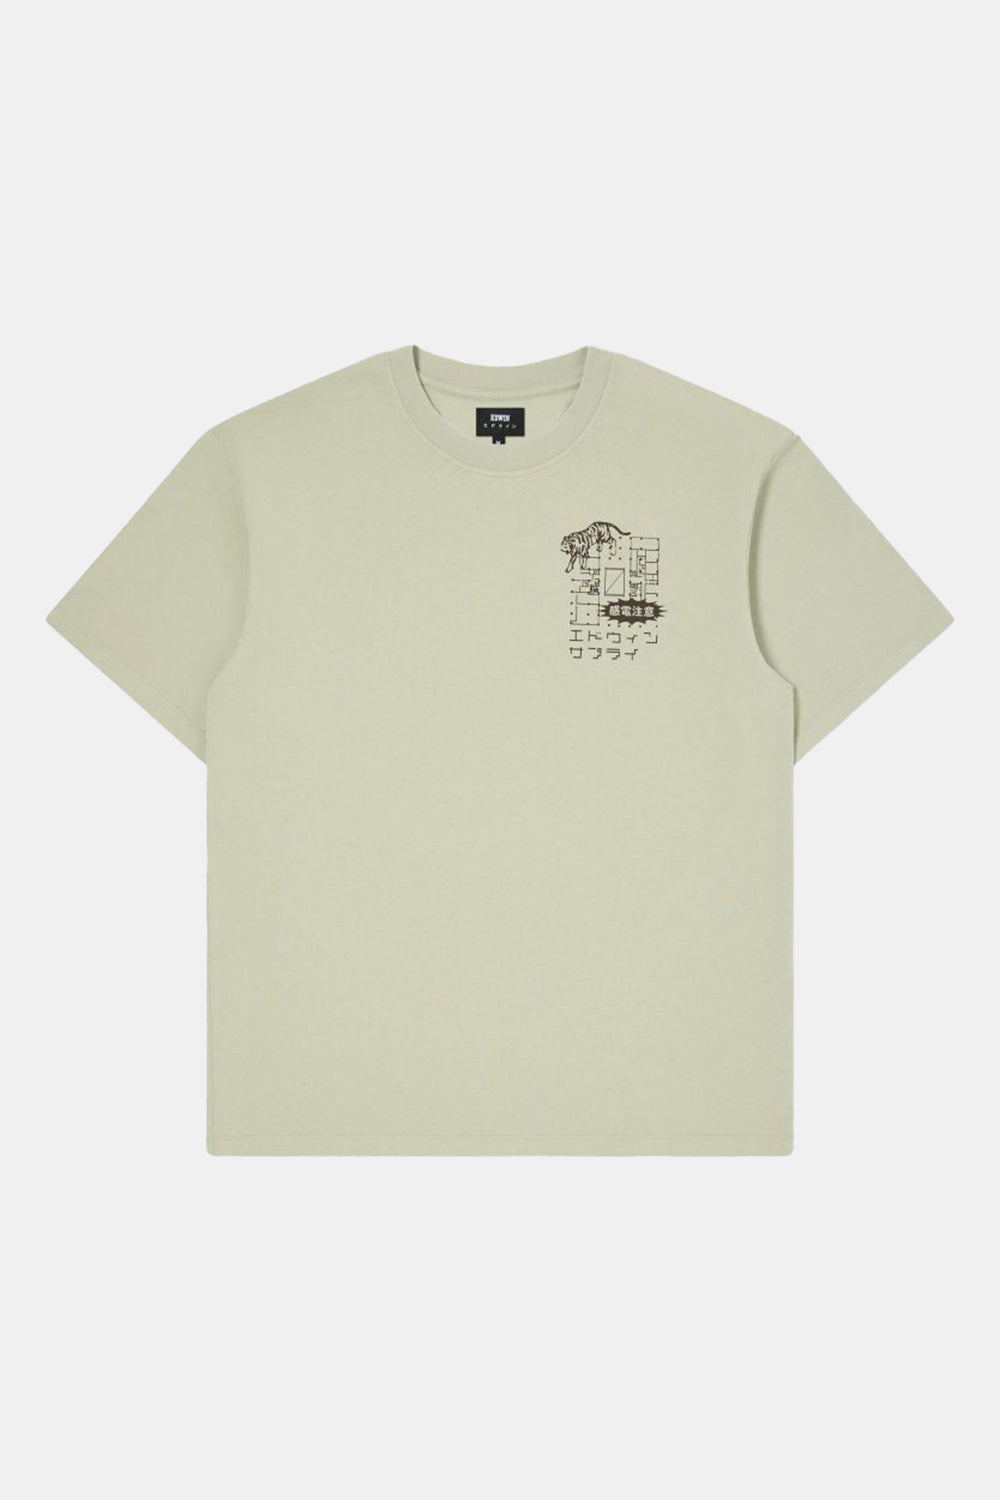 Edwin Hazardous Voltage T-Shirt (Desert Sage)